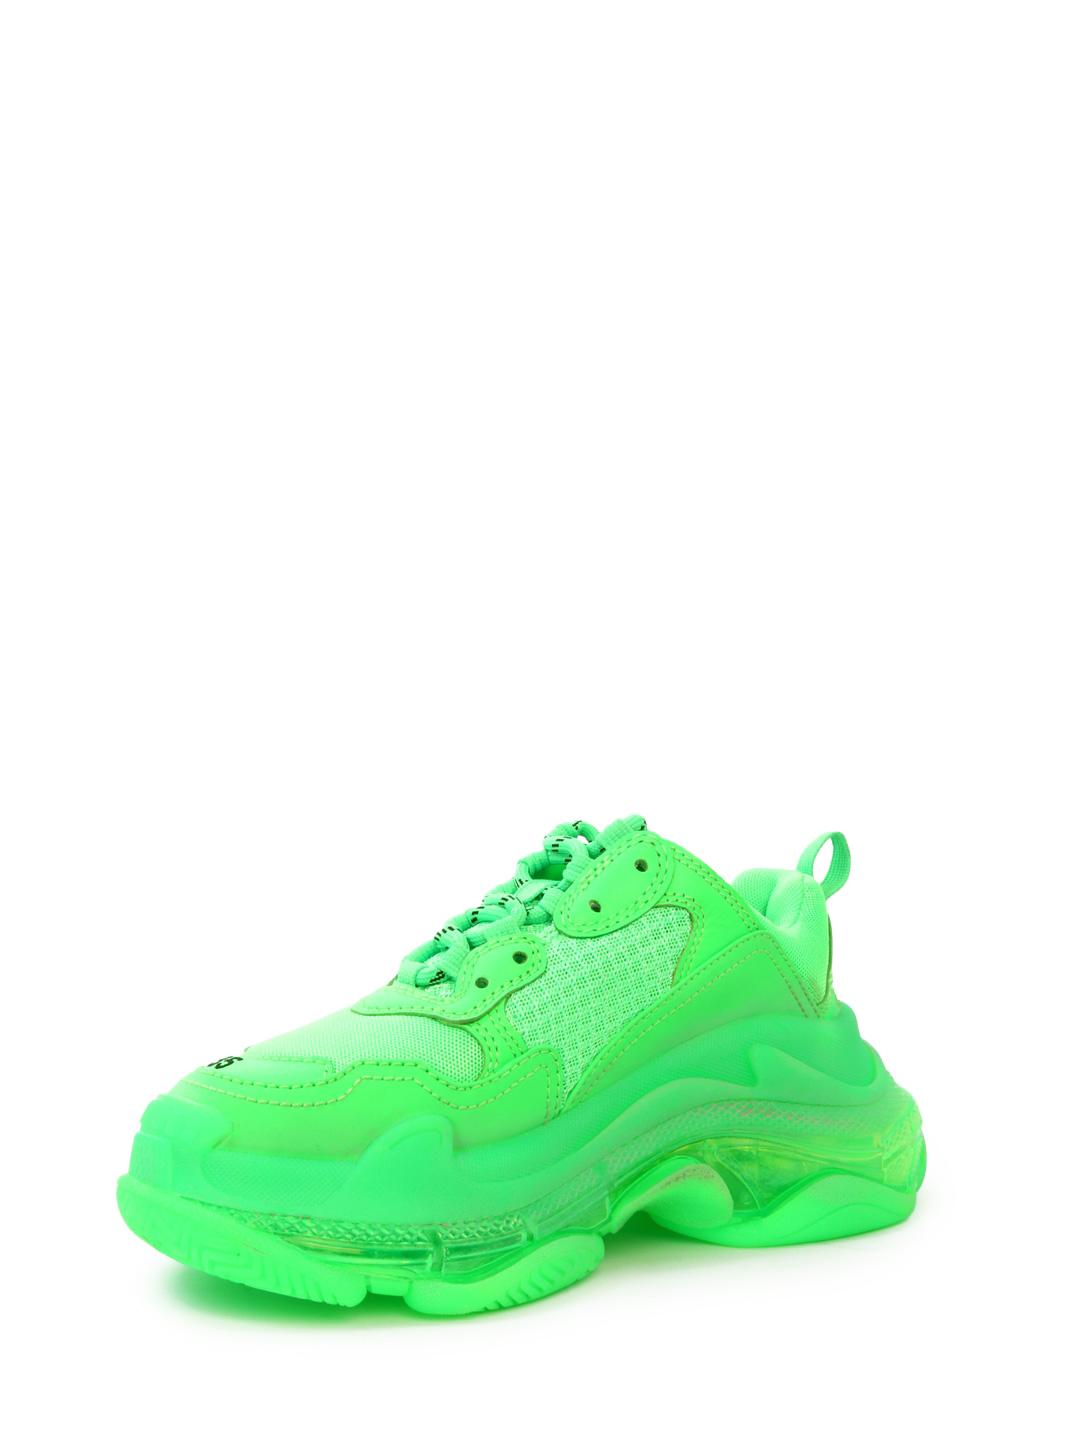 balenciaga shoes neon green price